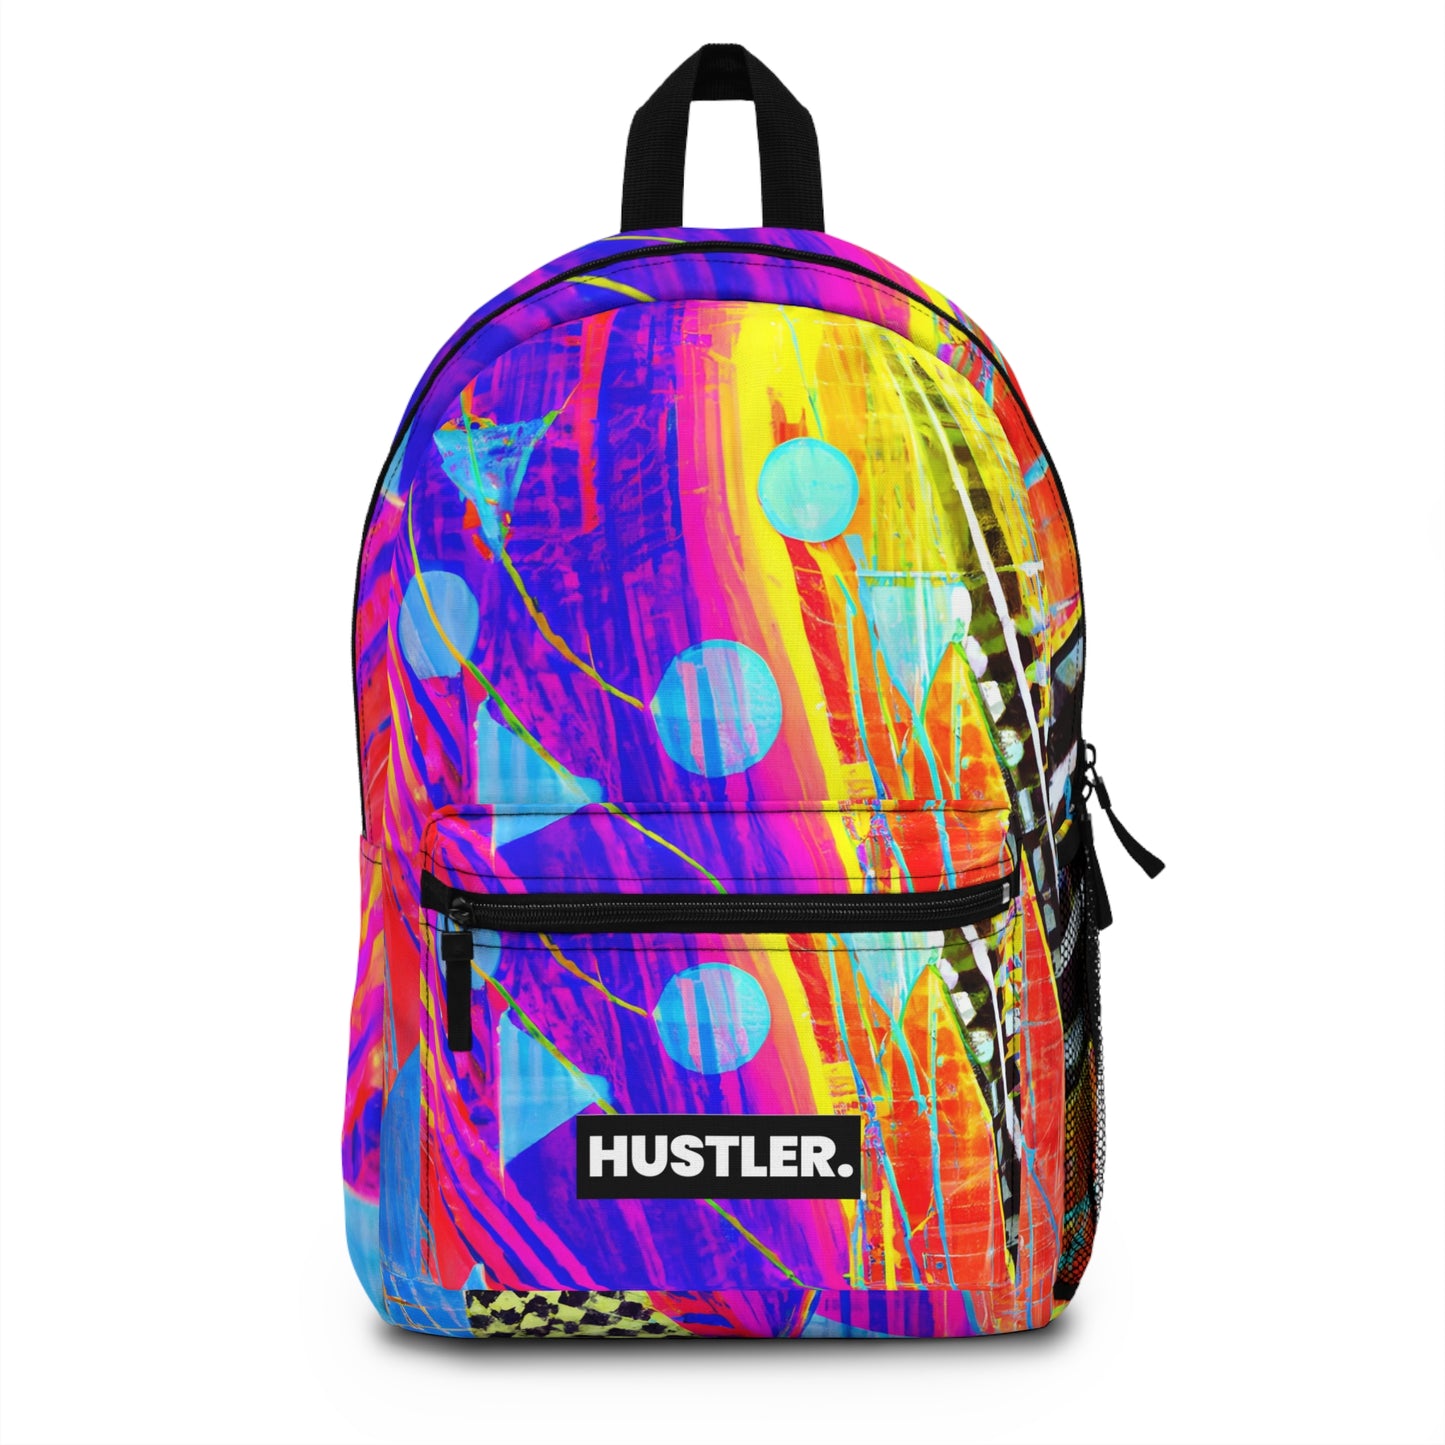 GalactikGlamour - Hustler Backpack